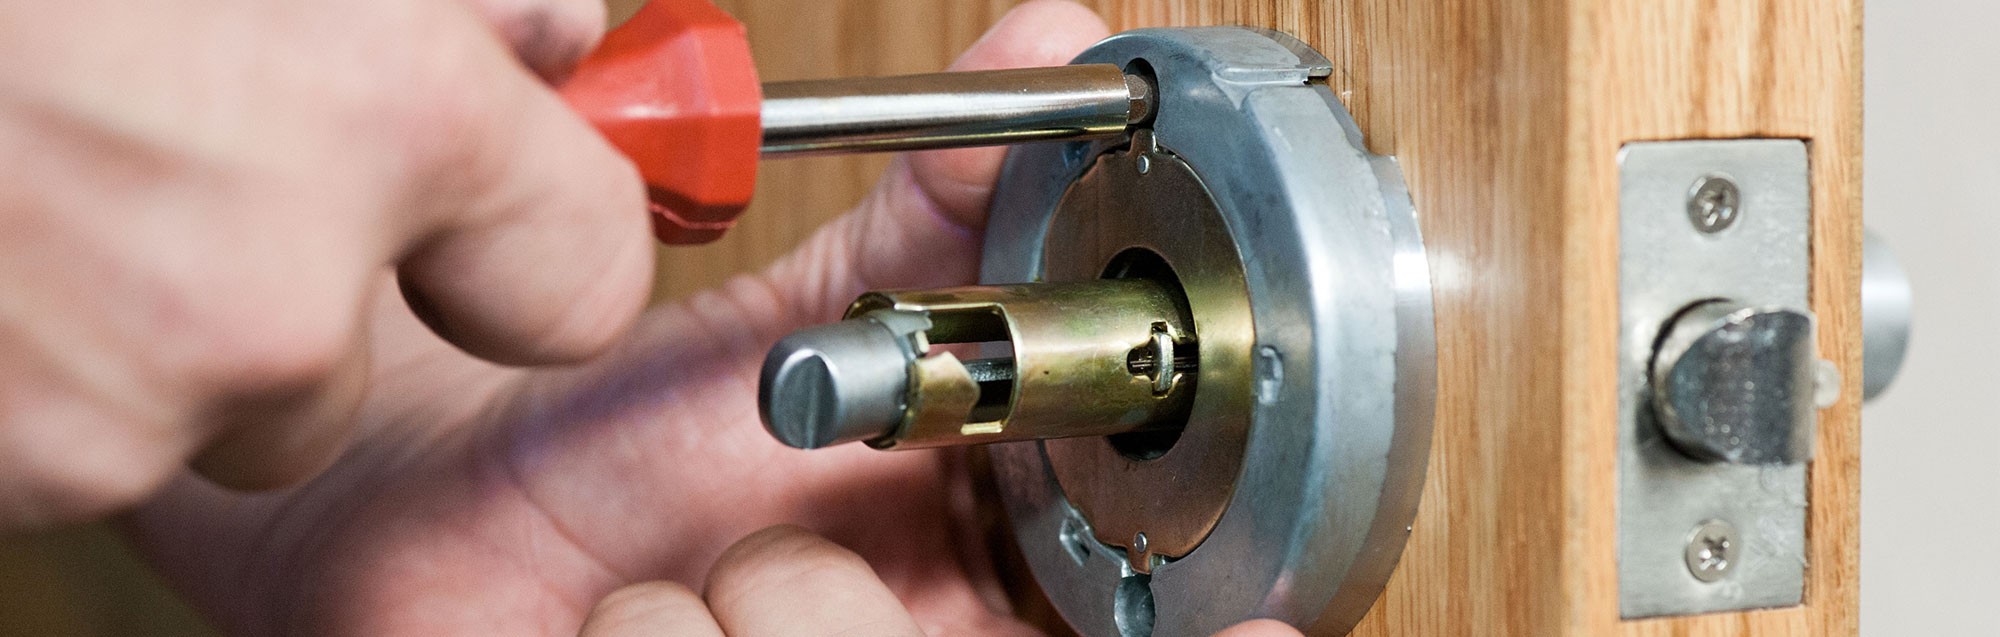 Replacing a door lock